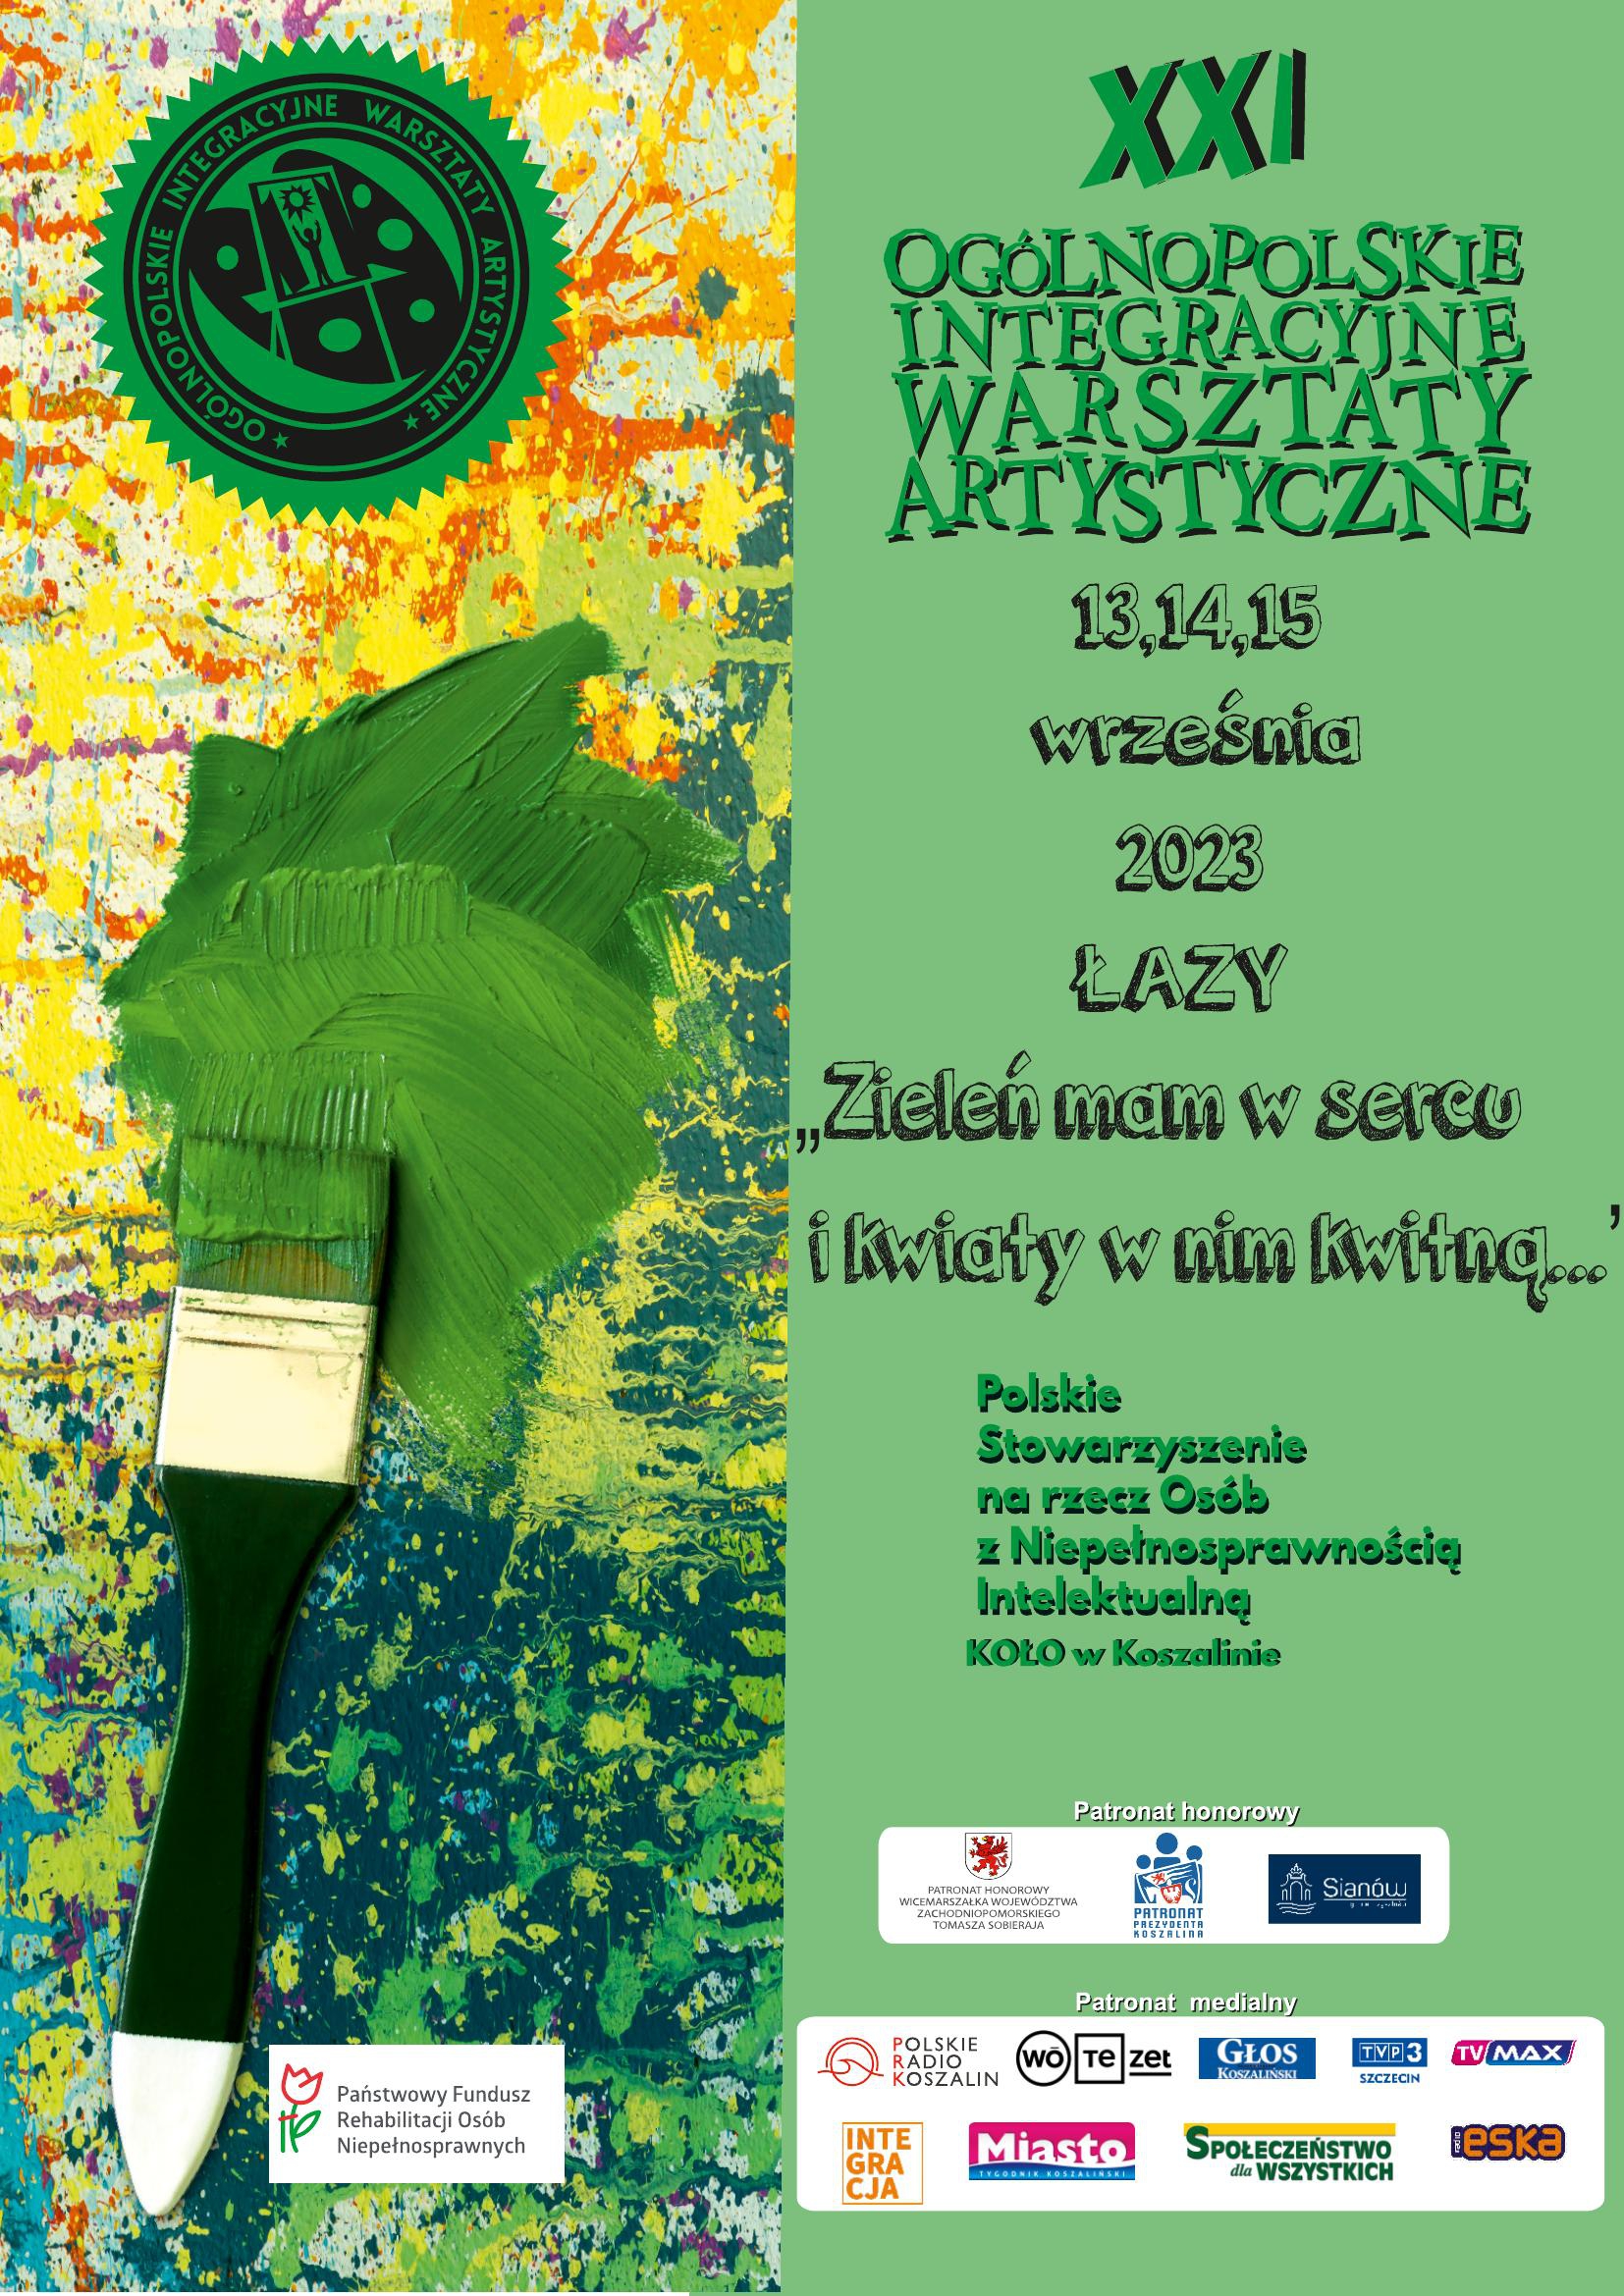 Plakat z zaproszeniem na 21 ogólnopolskie integracyjne warsztaty artystyczne w Łazach od 13 do 15 września 2023